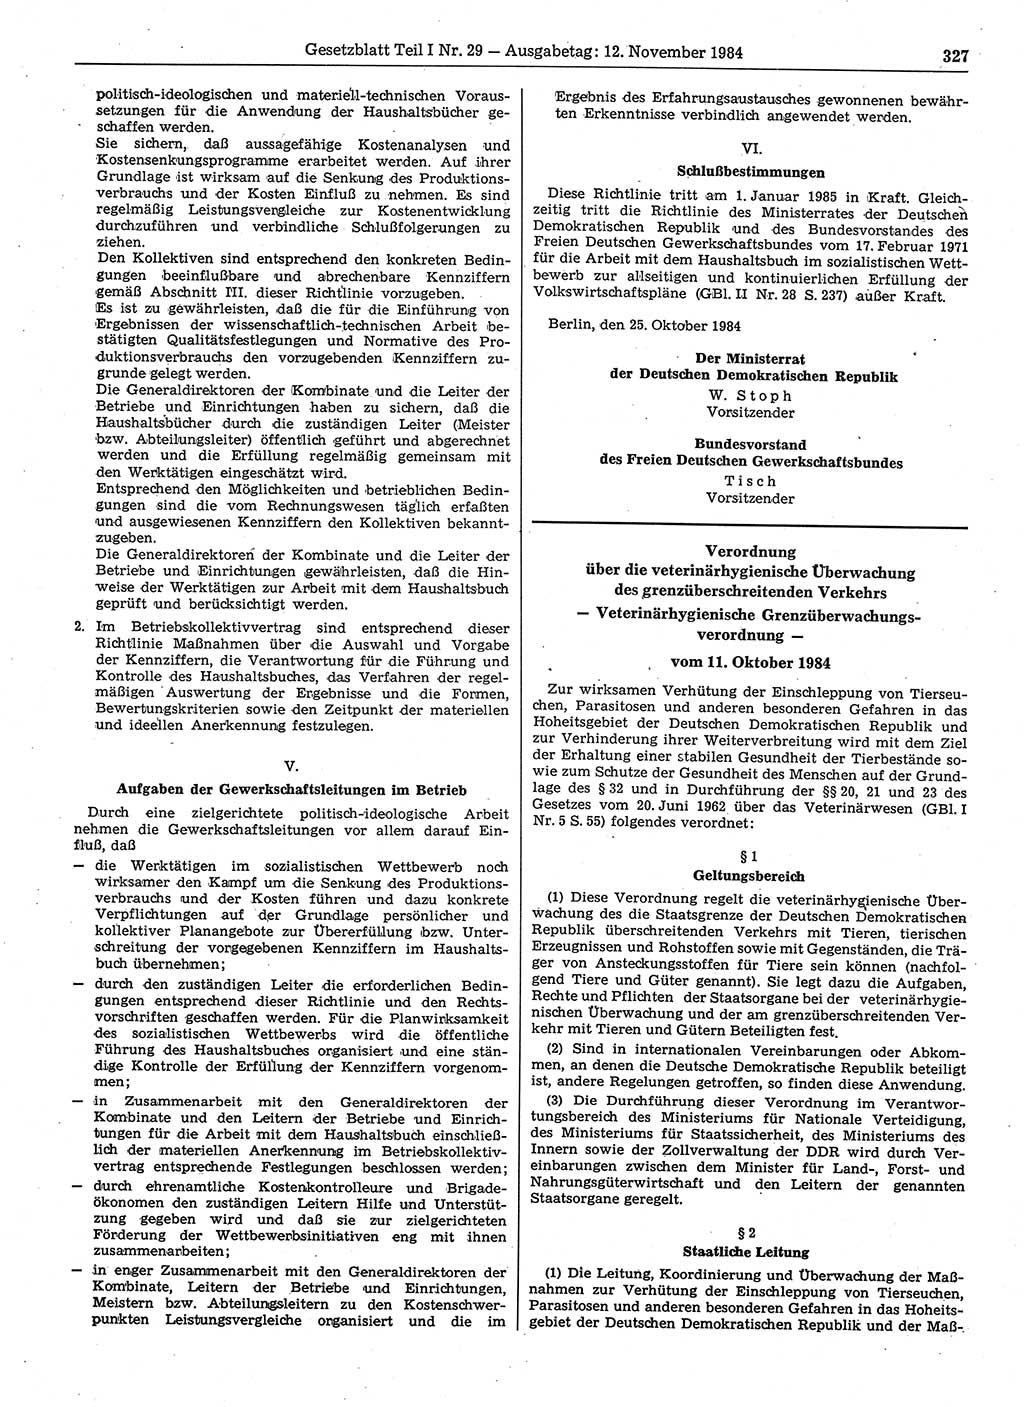 Gesetzblatt (GBl.) der Deutschen Demokratischen Republik (DDR) Teil Ⅰ 1984, Seite 327 (GBl. DDR Ⅰ 1984, S. 327)